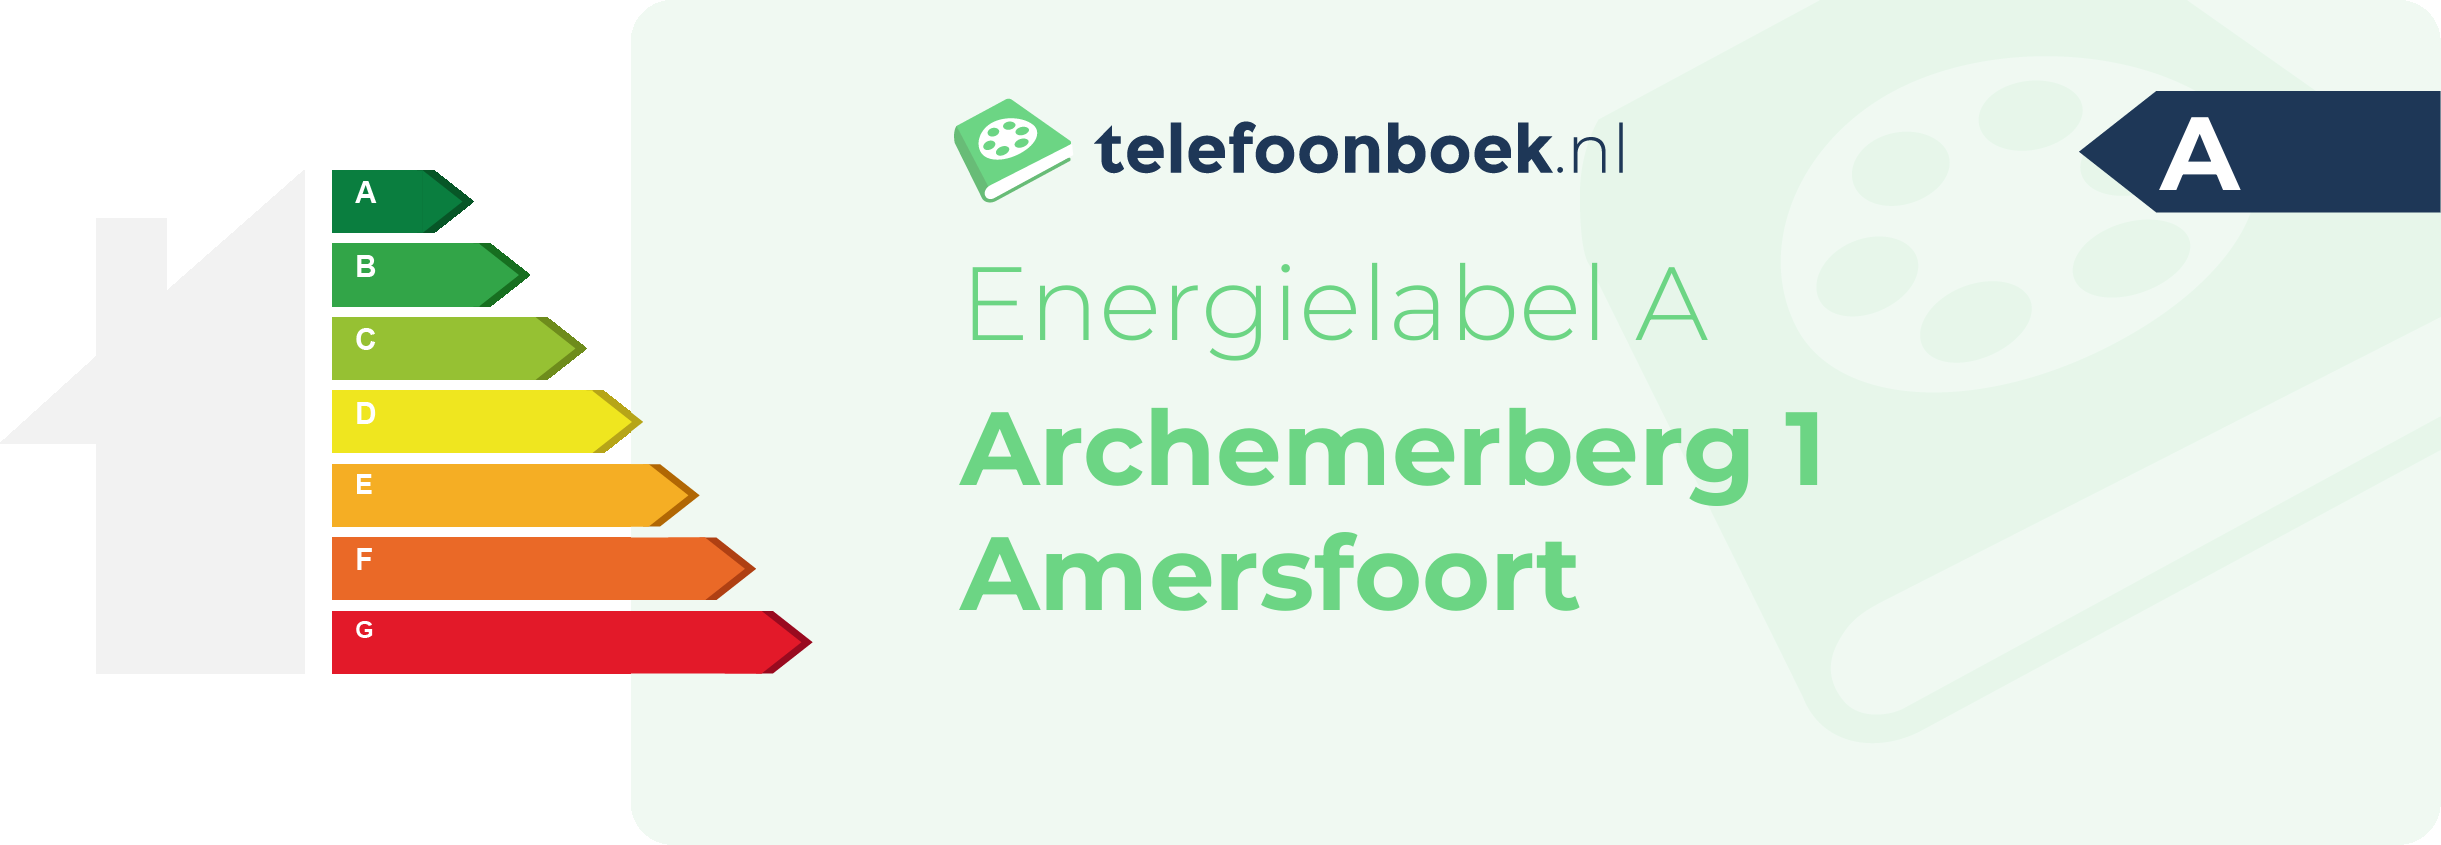 Energielabel Archemerberg 1 Amersfoort